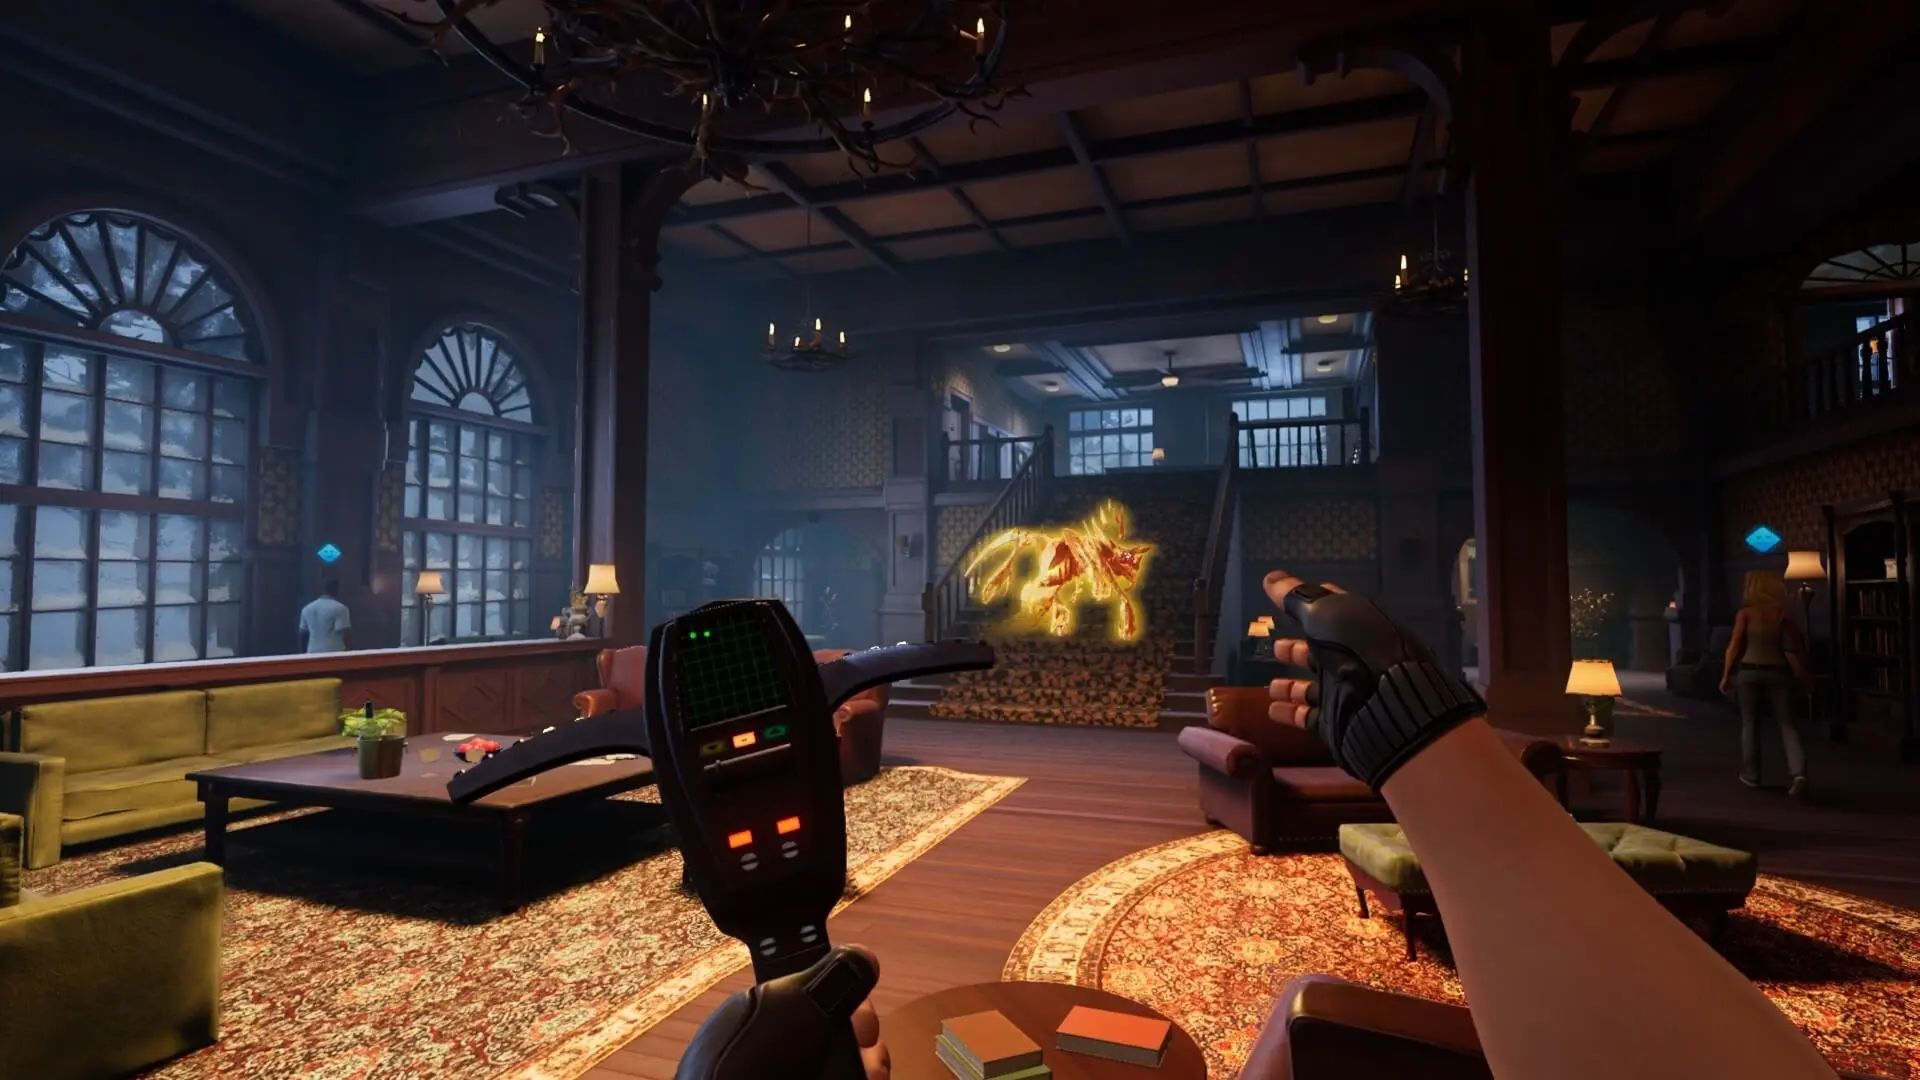 دانلود بازی Ghostbusters: Spirits Unleashed برای کامپیوتر PC